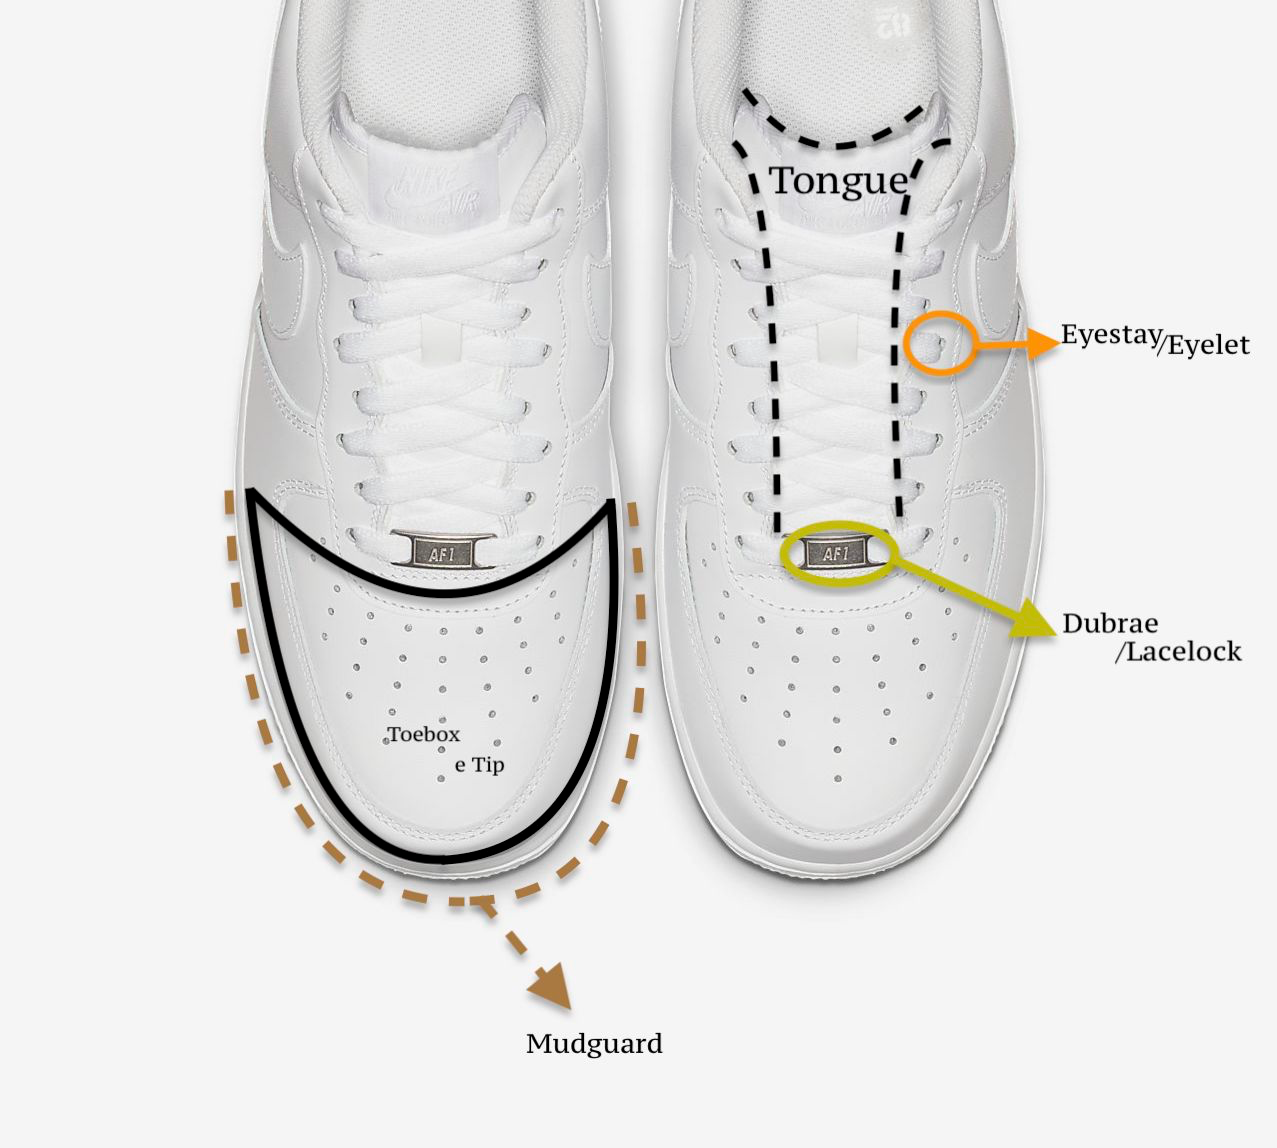 Knowledge: l'anatomia di una Sneaker 1o1 | by Valentino Addevico | Medium